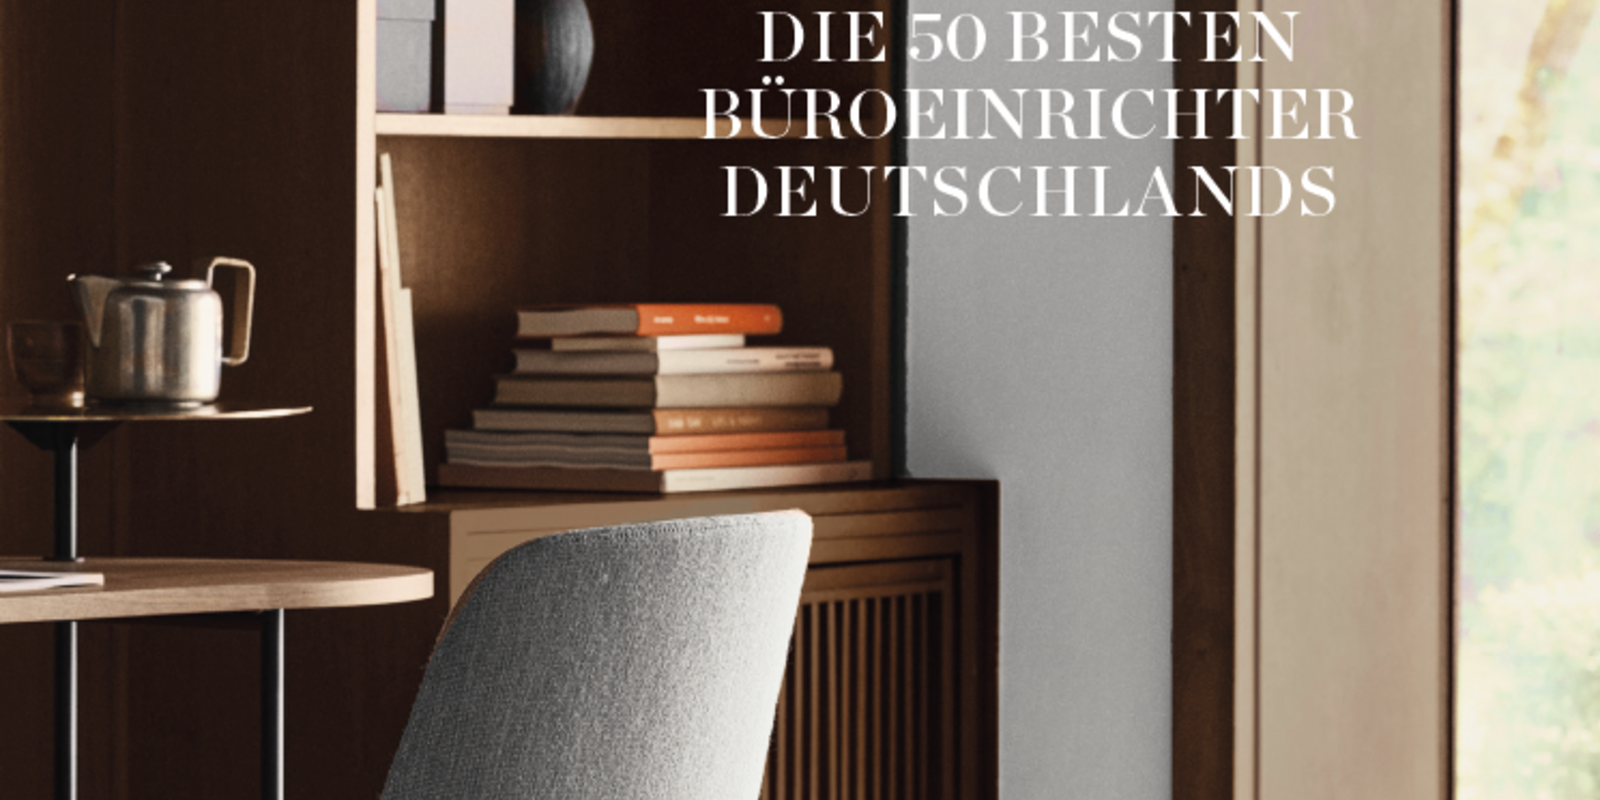 Ausgezeichnet! pro office gehört zu den besten Büroeinrichtern Deutschlands Bild 1